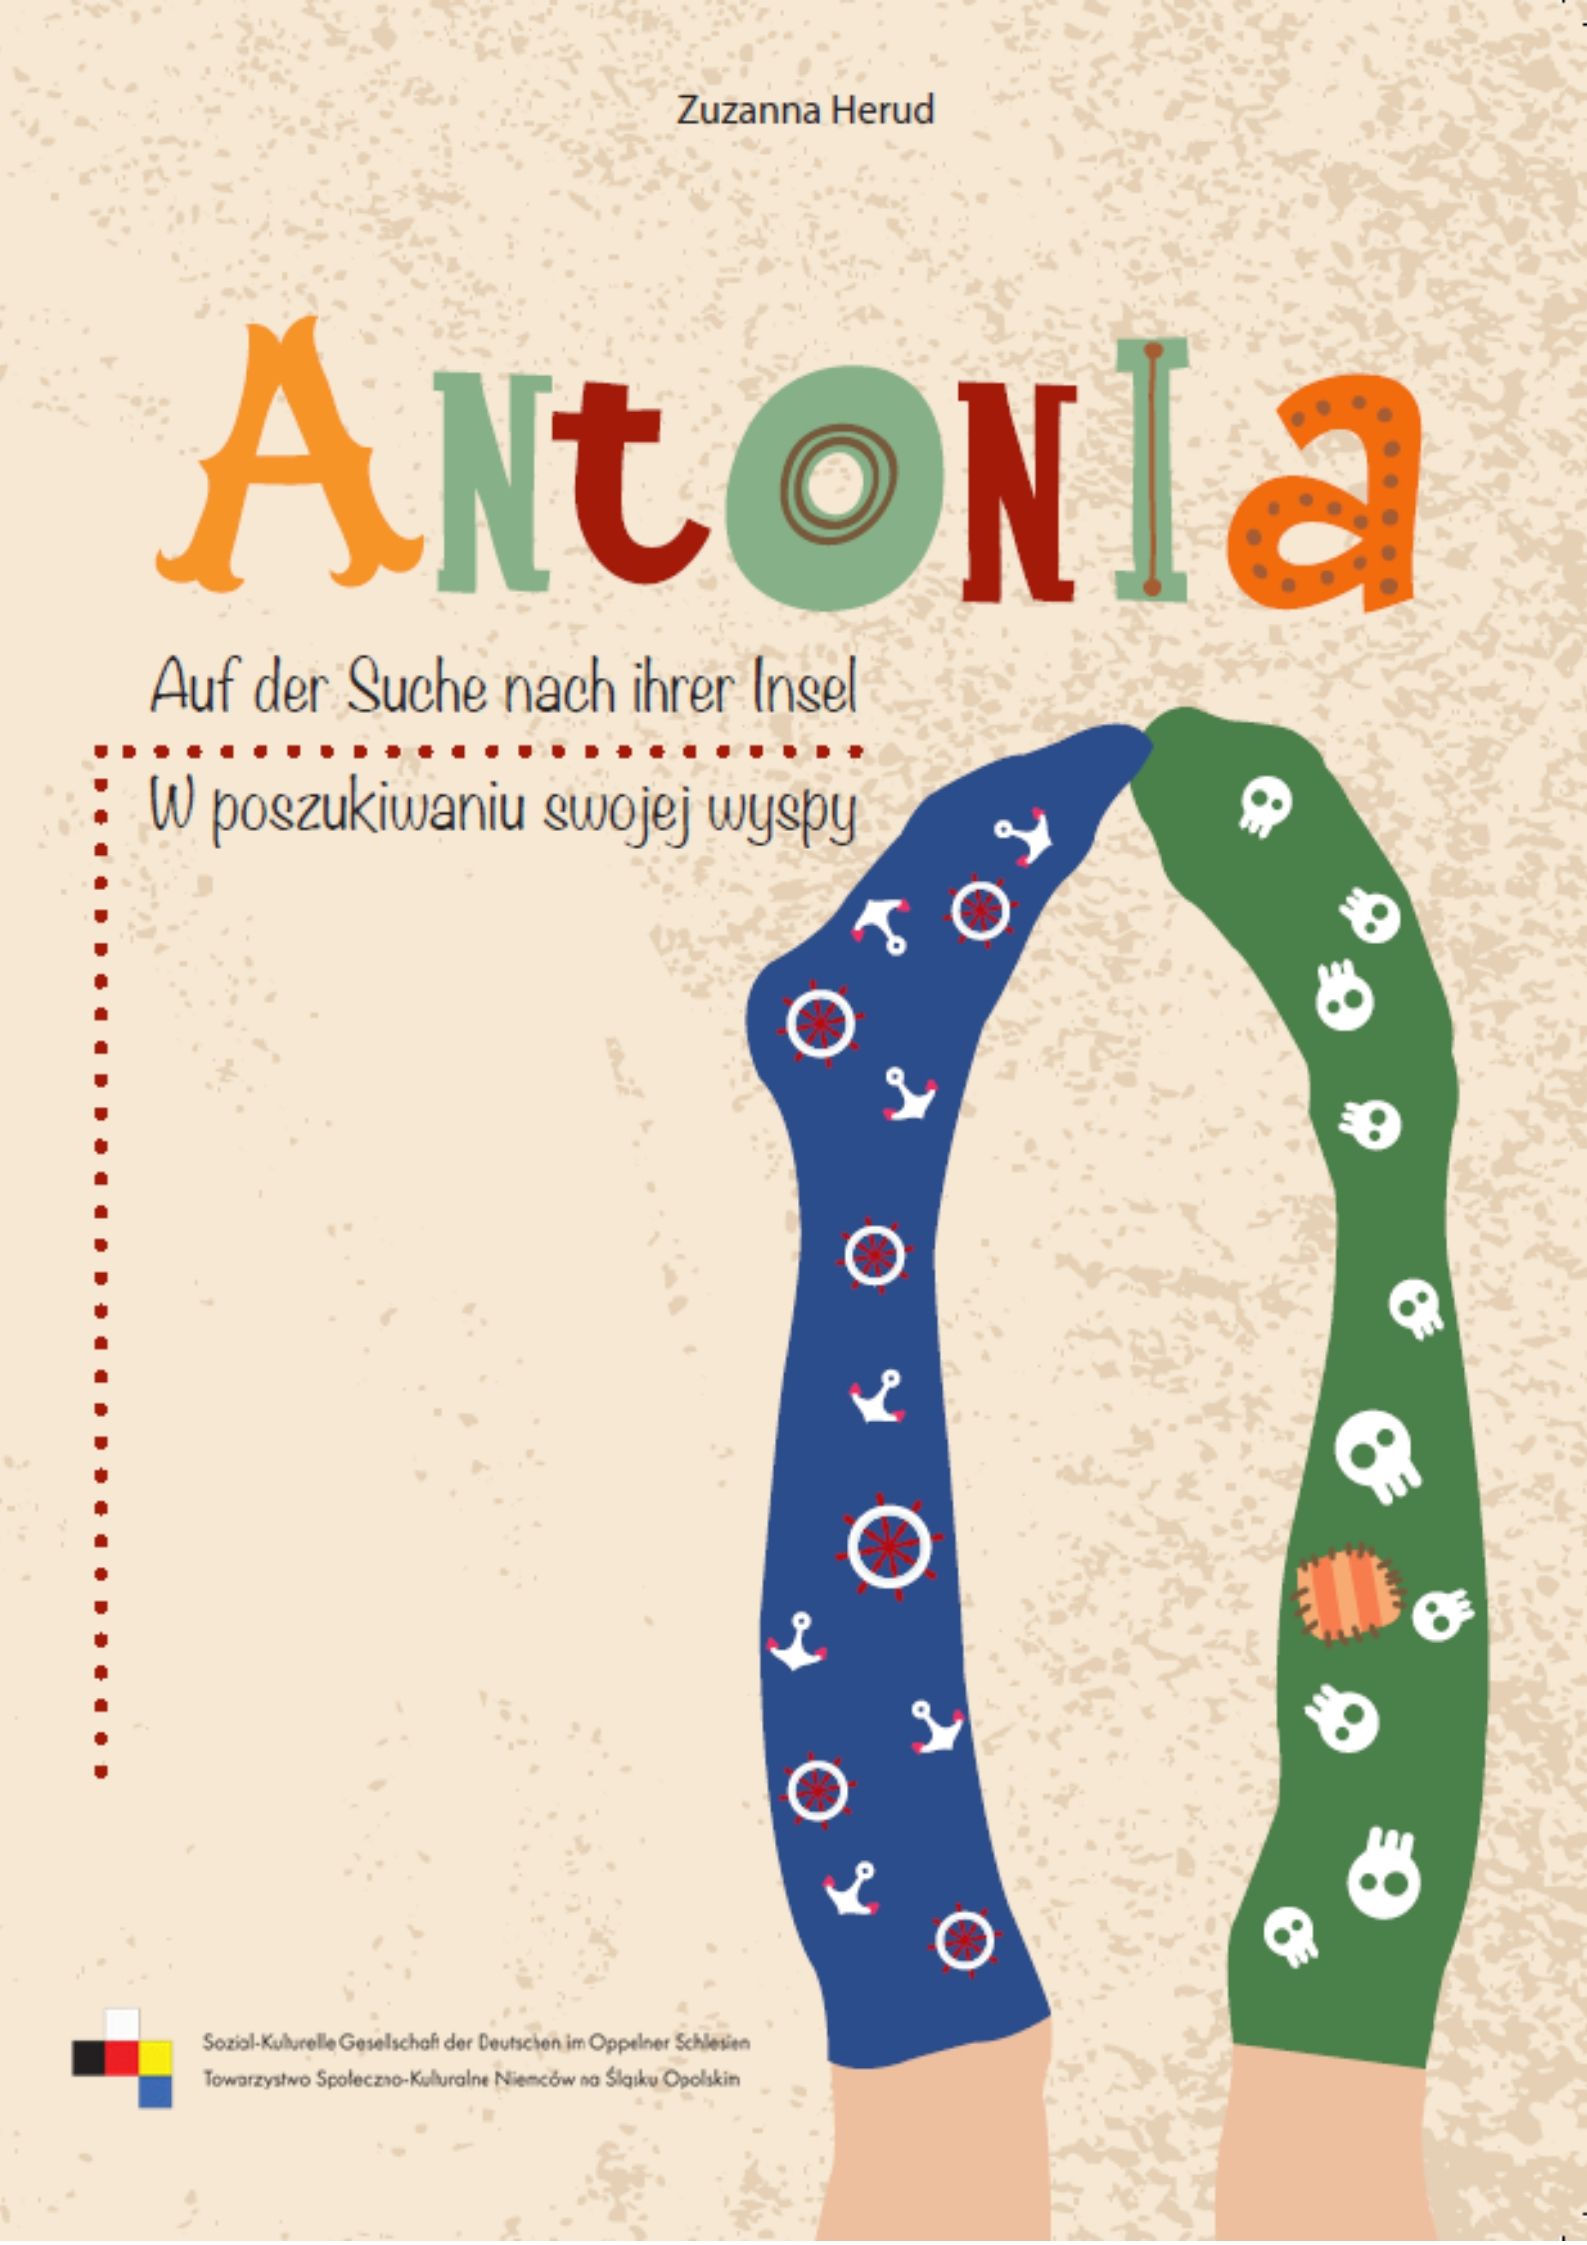 Antonia – Auf der Suche nach ihrer Insel